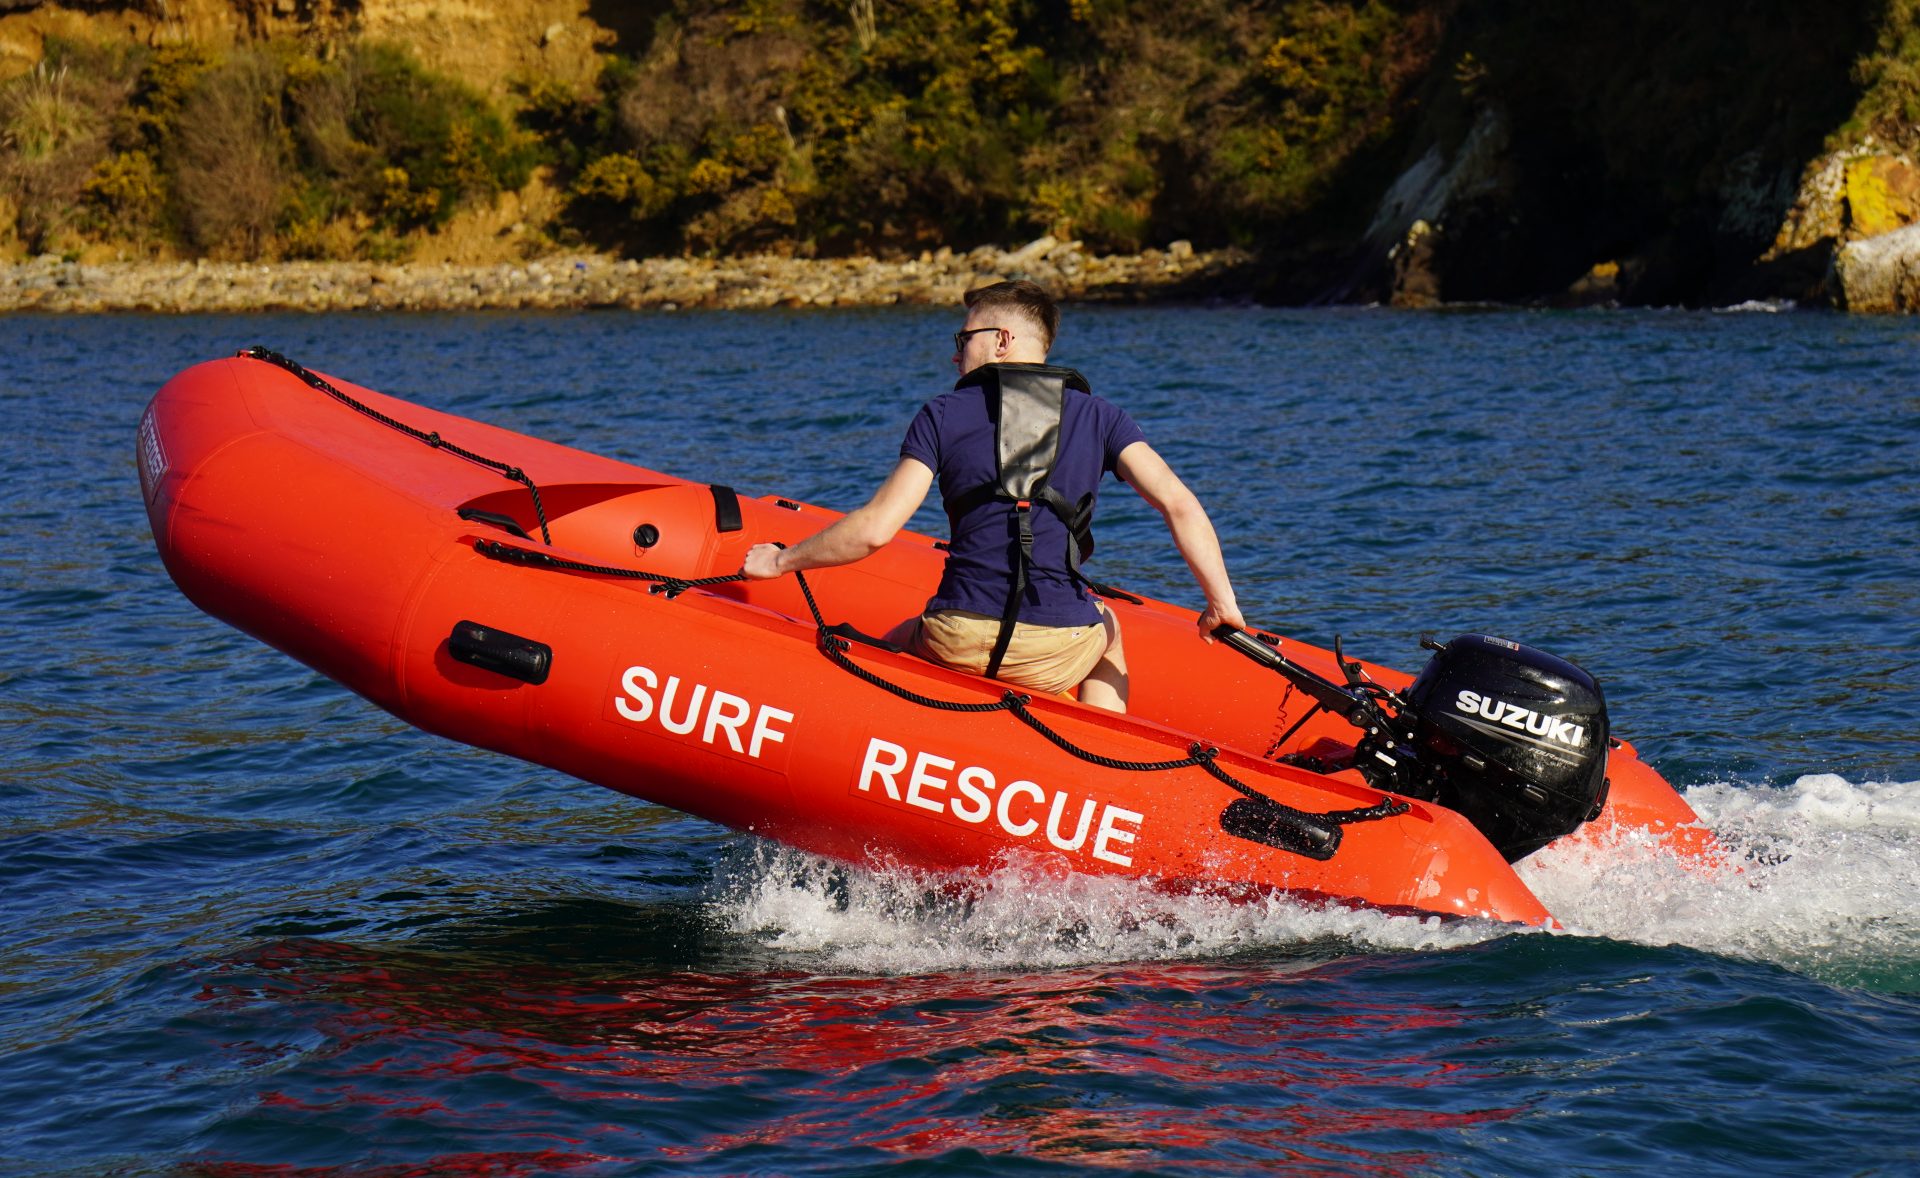 Nautique Services la Rochelle - Vente et entretien bateau - 3D Tender Surf Rescue 400